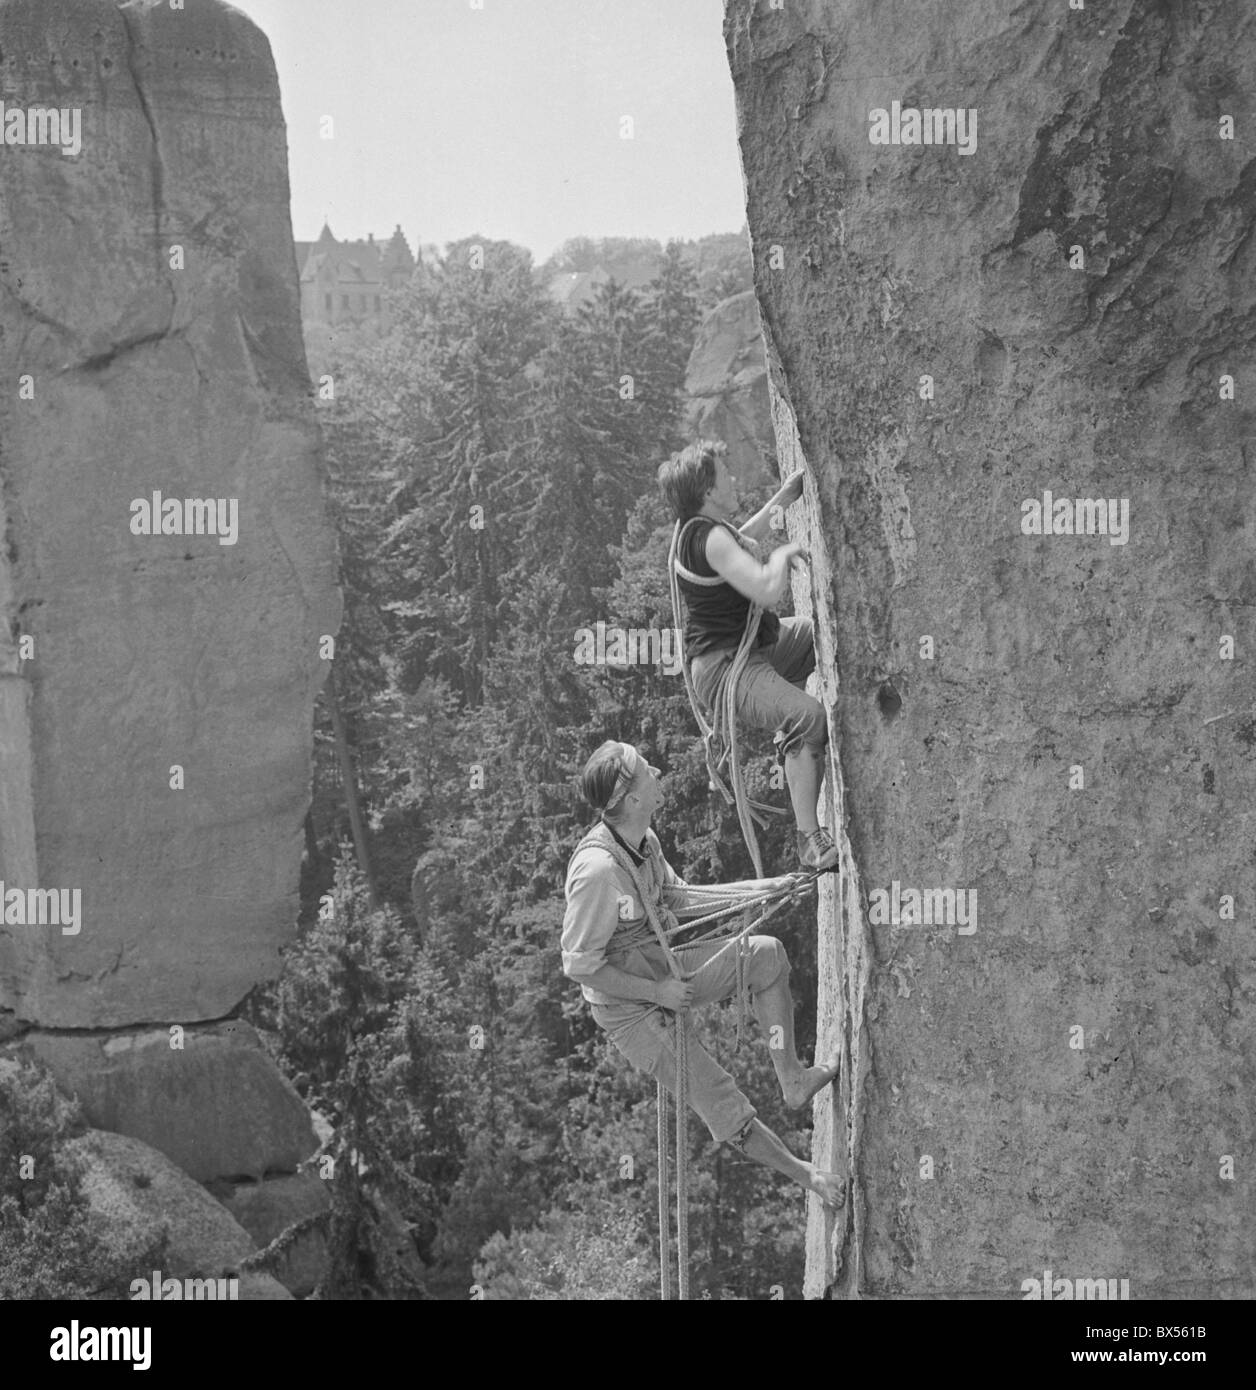 Les alpinistes pratiquant sur les rochers de grès à Cesky raj près de Turnov. CTK Photo/Jan Tachezy Banque D'Images